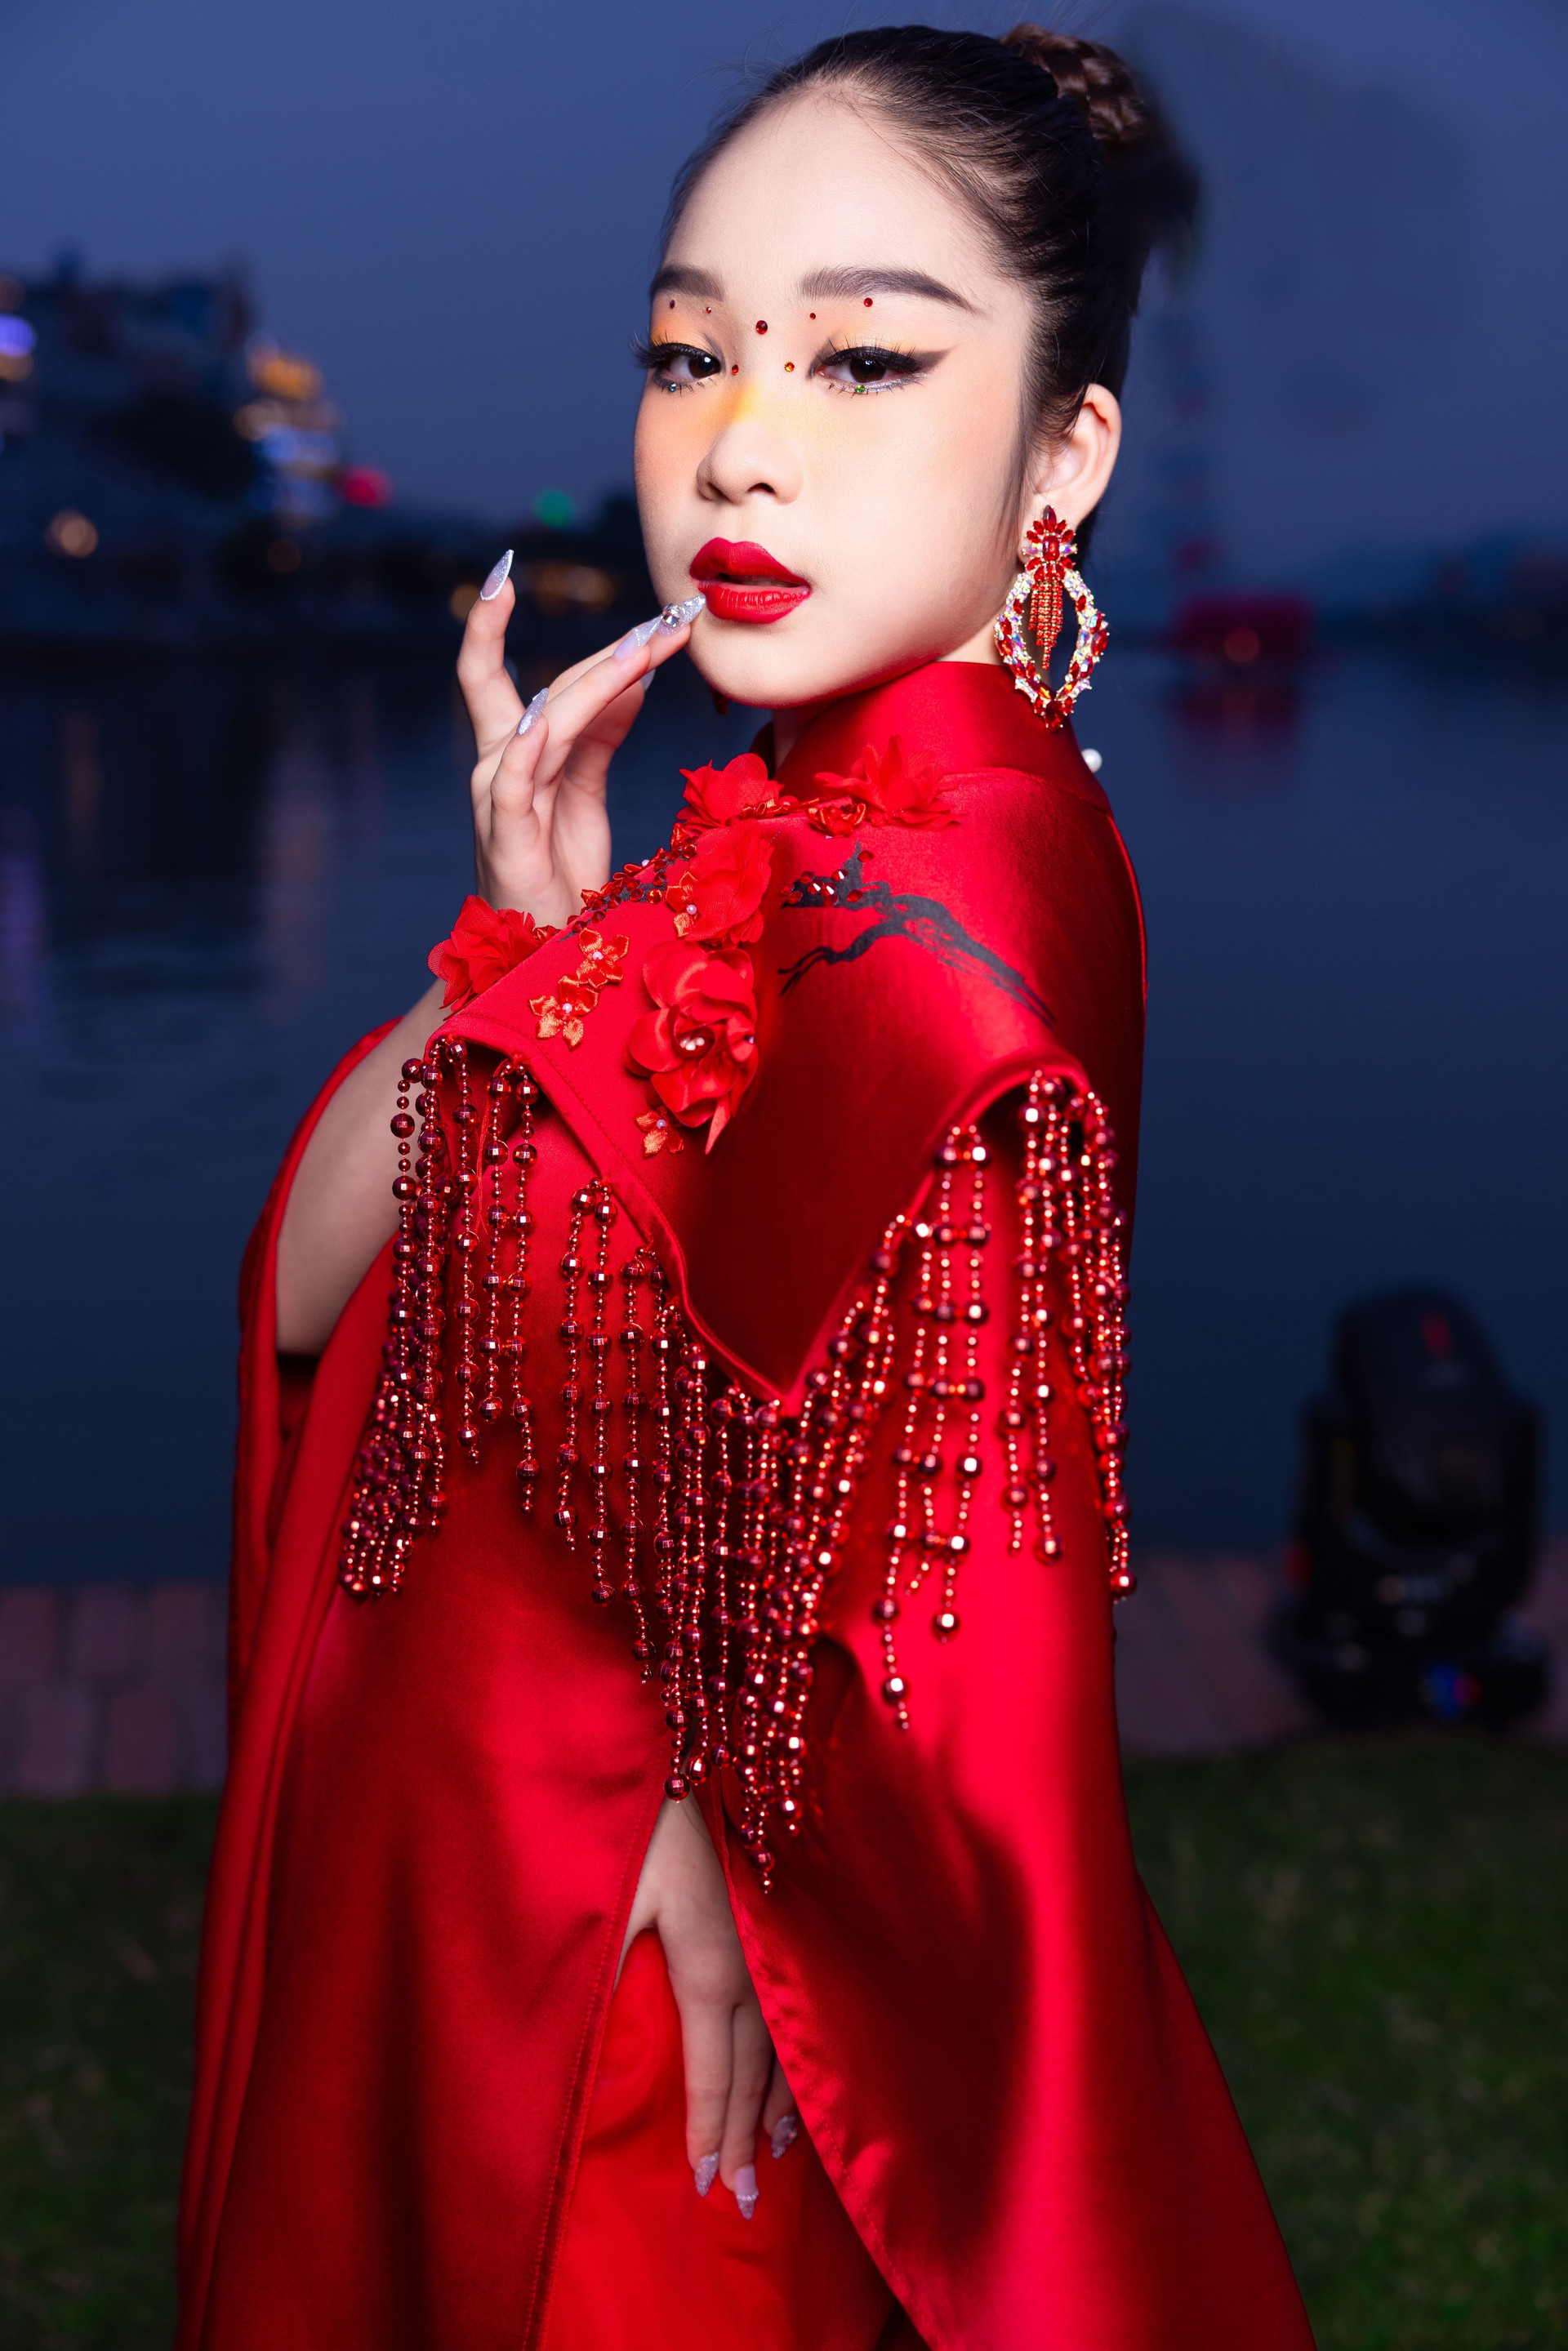 Năm 2019, Đào Nguyễn Hồng Lam đã trở thành nhan sắc nhí đầu tiên của Việt Nam nhận được gói học bổng 100% của Học viện đào tạo huấn luyện Hoa hậu từ “đất nước Hoa hậu” Venezuela.